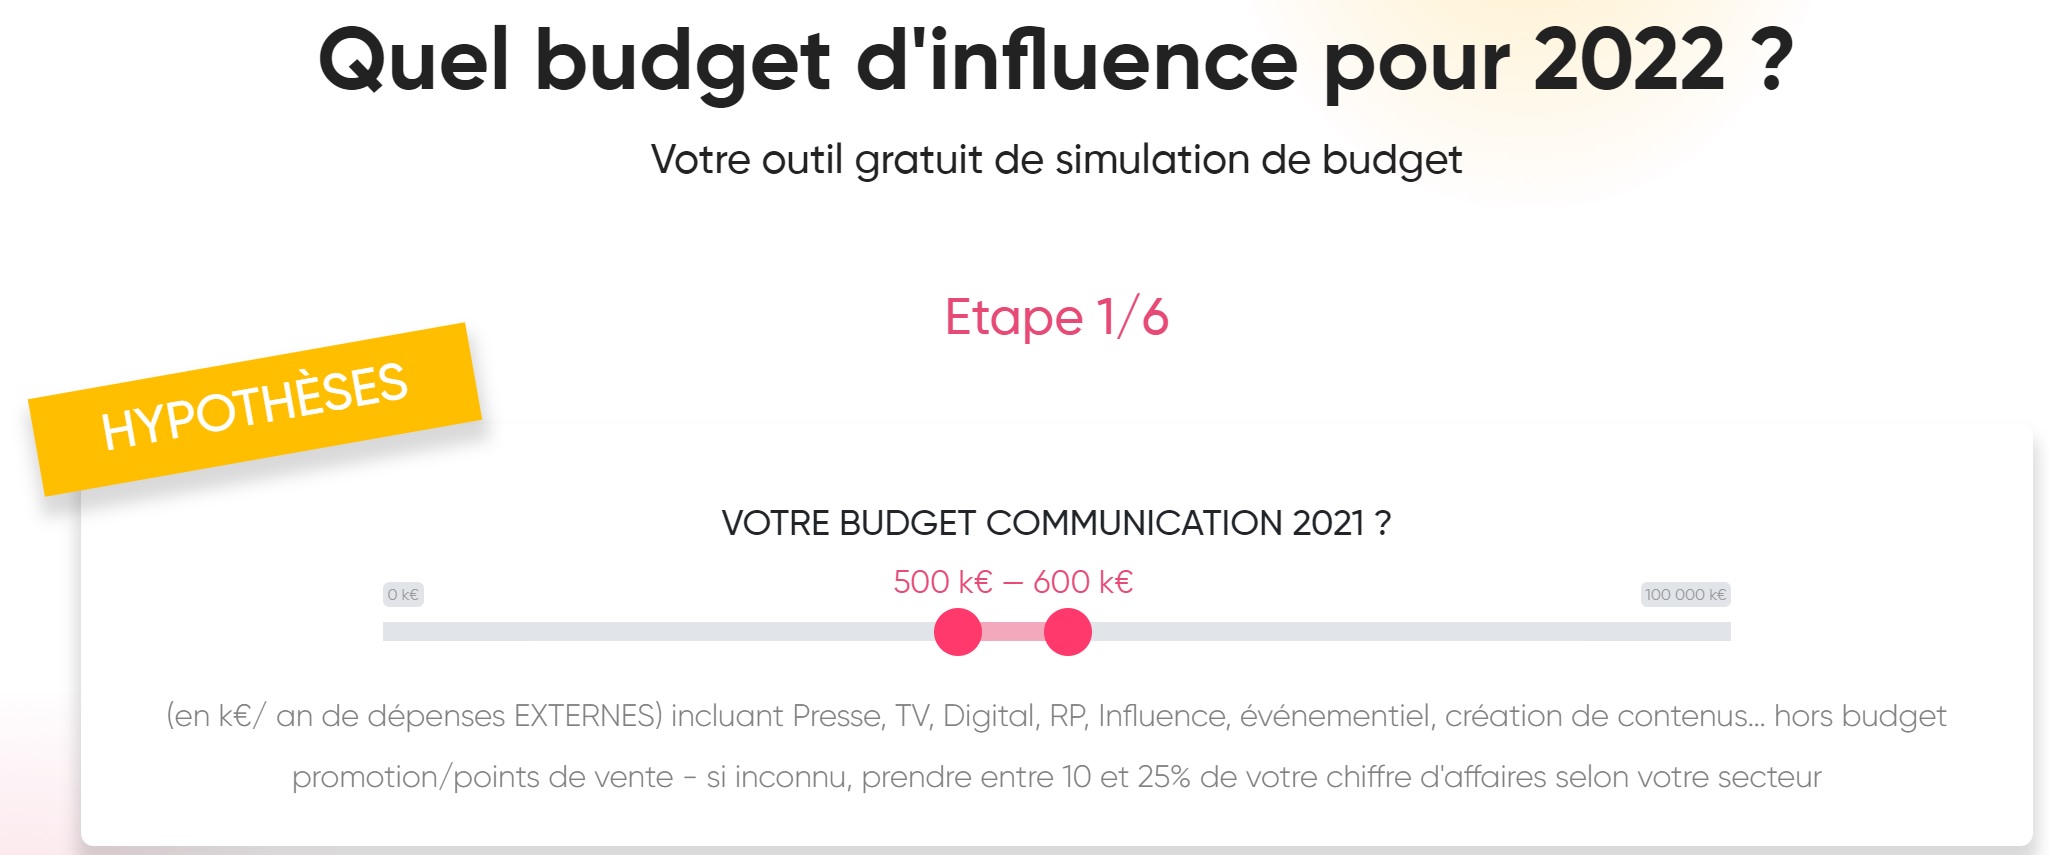 outil gratuit de simulation de budget d’influence 2022